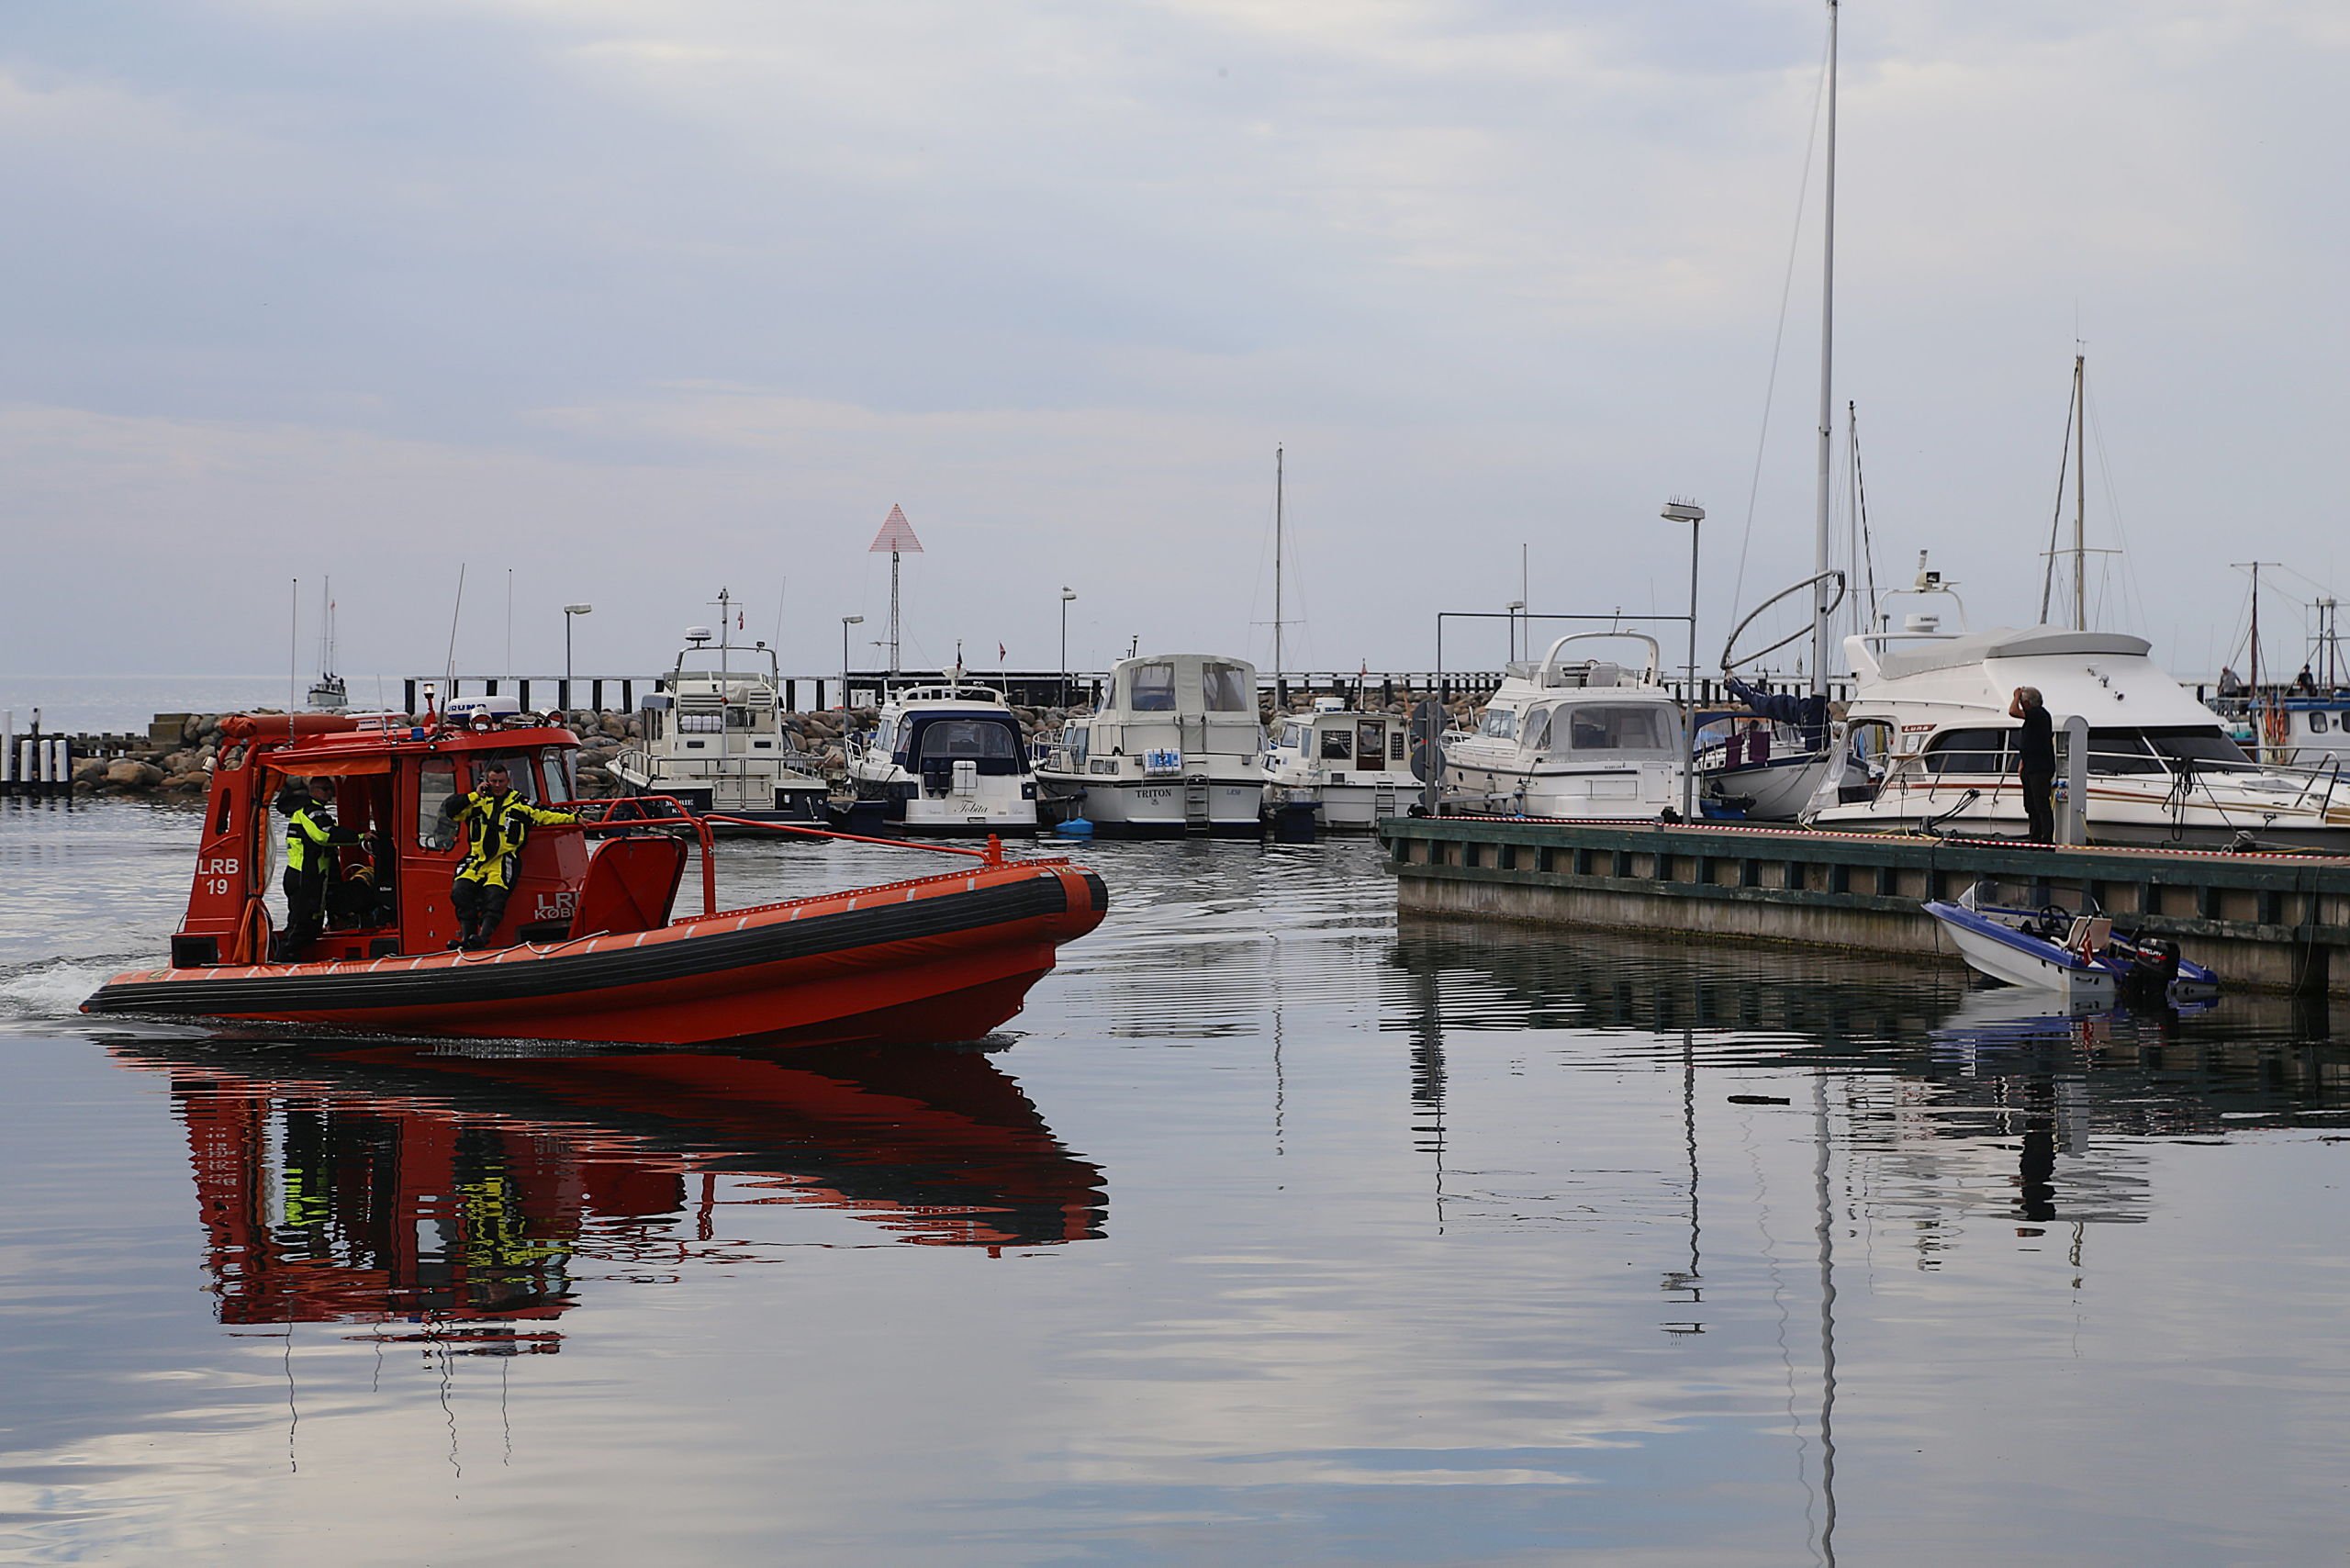 Tragisk drukneulykke på Læsø: Derfor kunne det gå så galt